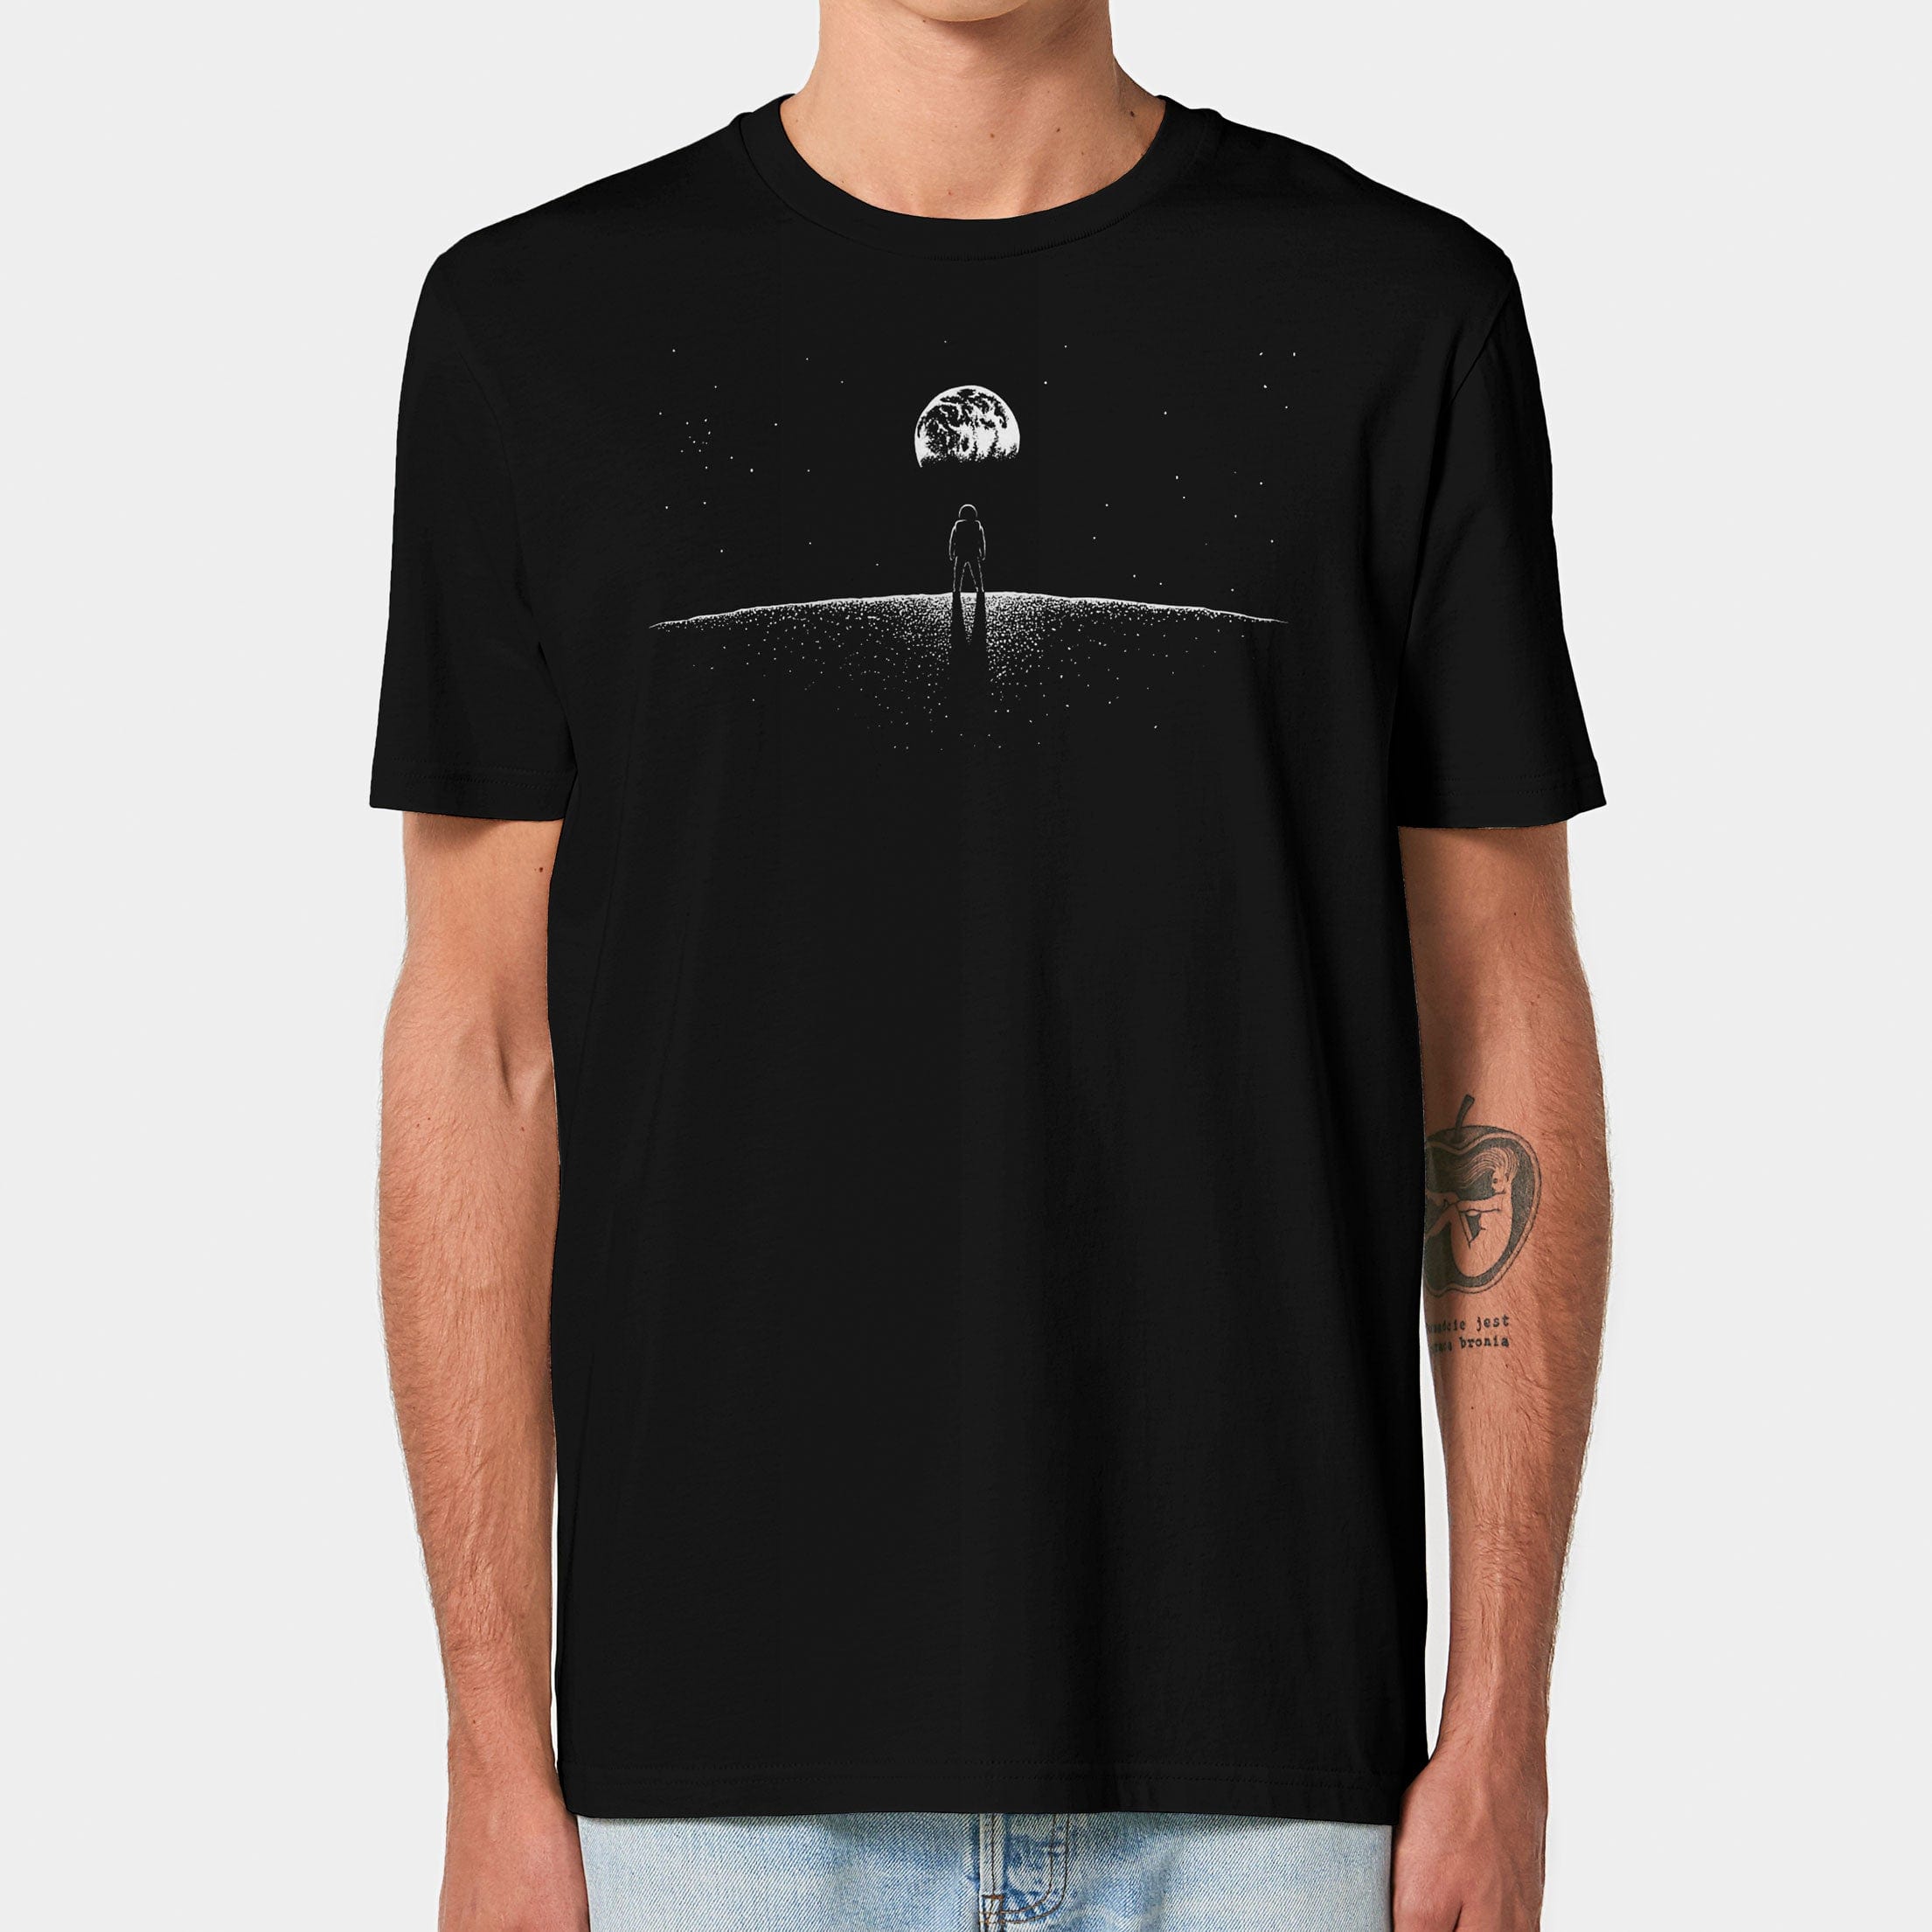 HEITER & LÄSSIG T-Shirt "Spaceview" S / schwarz - aus nachhaltiger und fairer Produktion